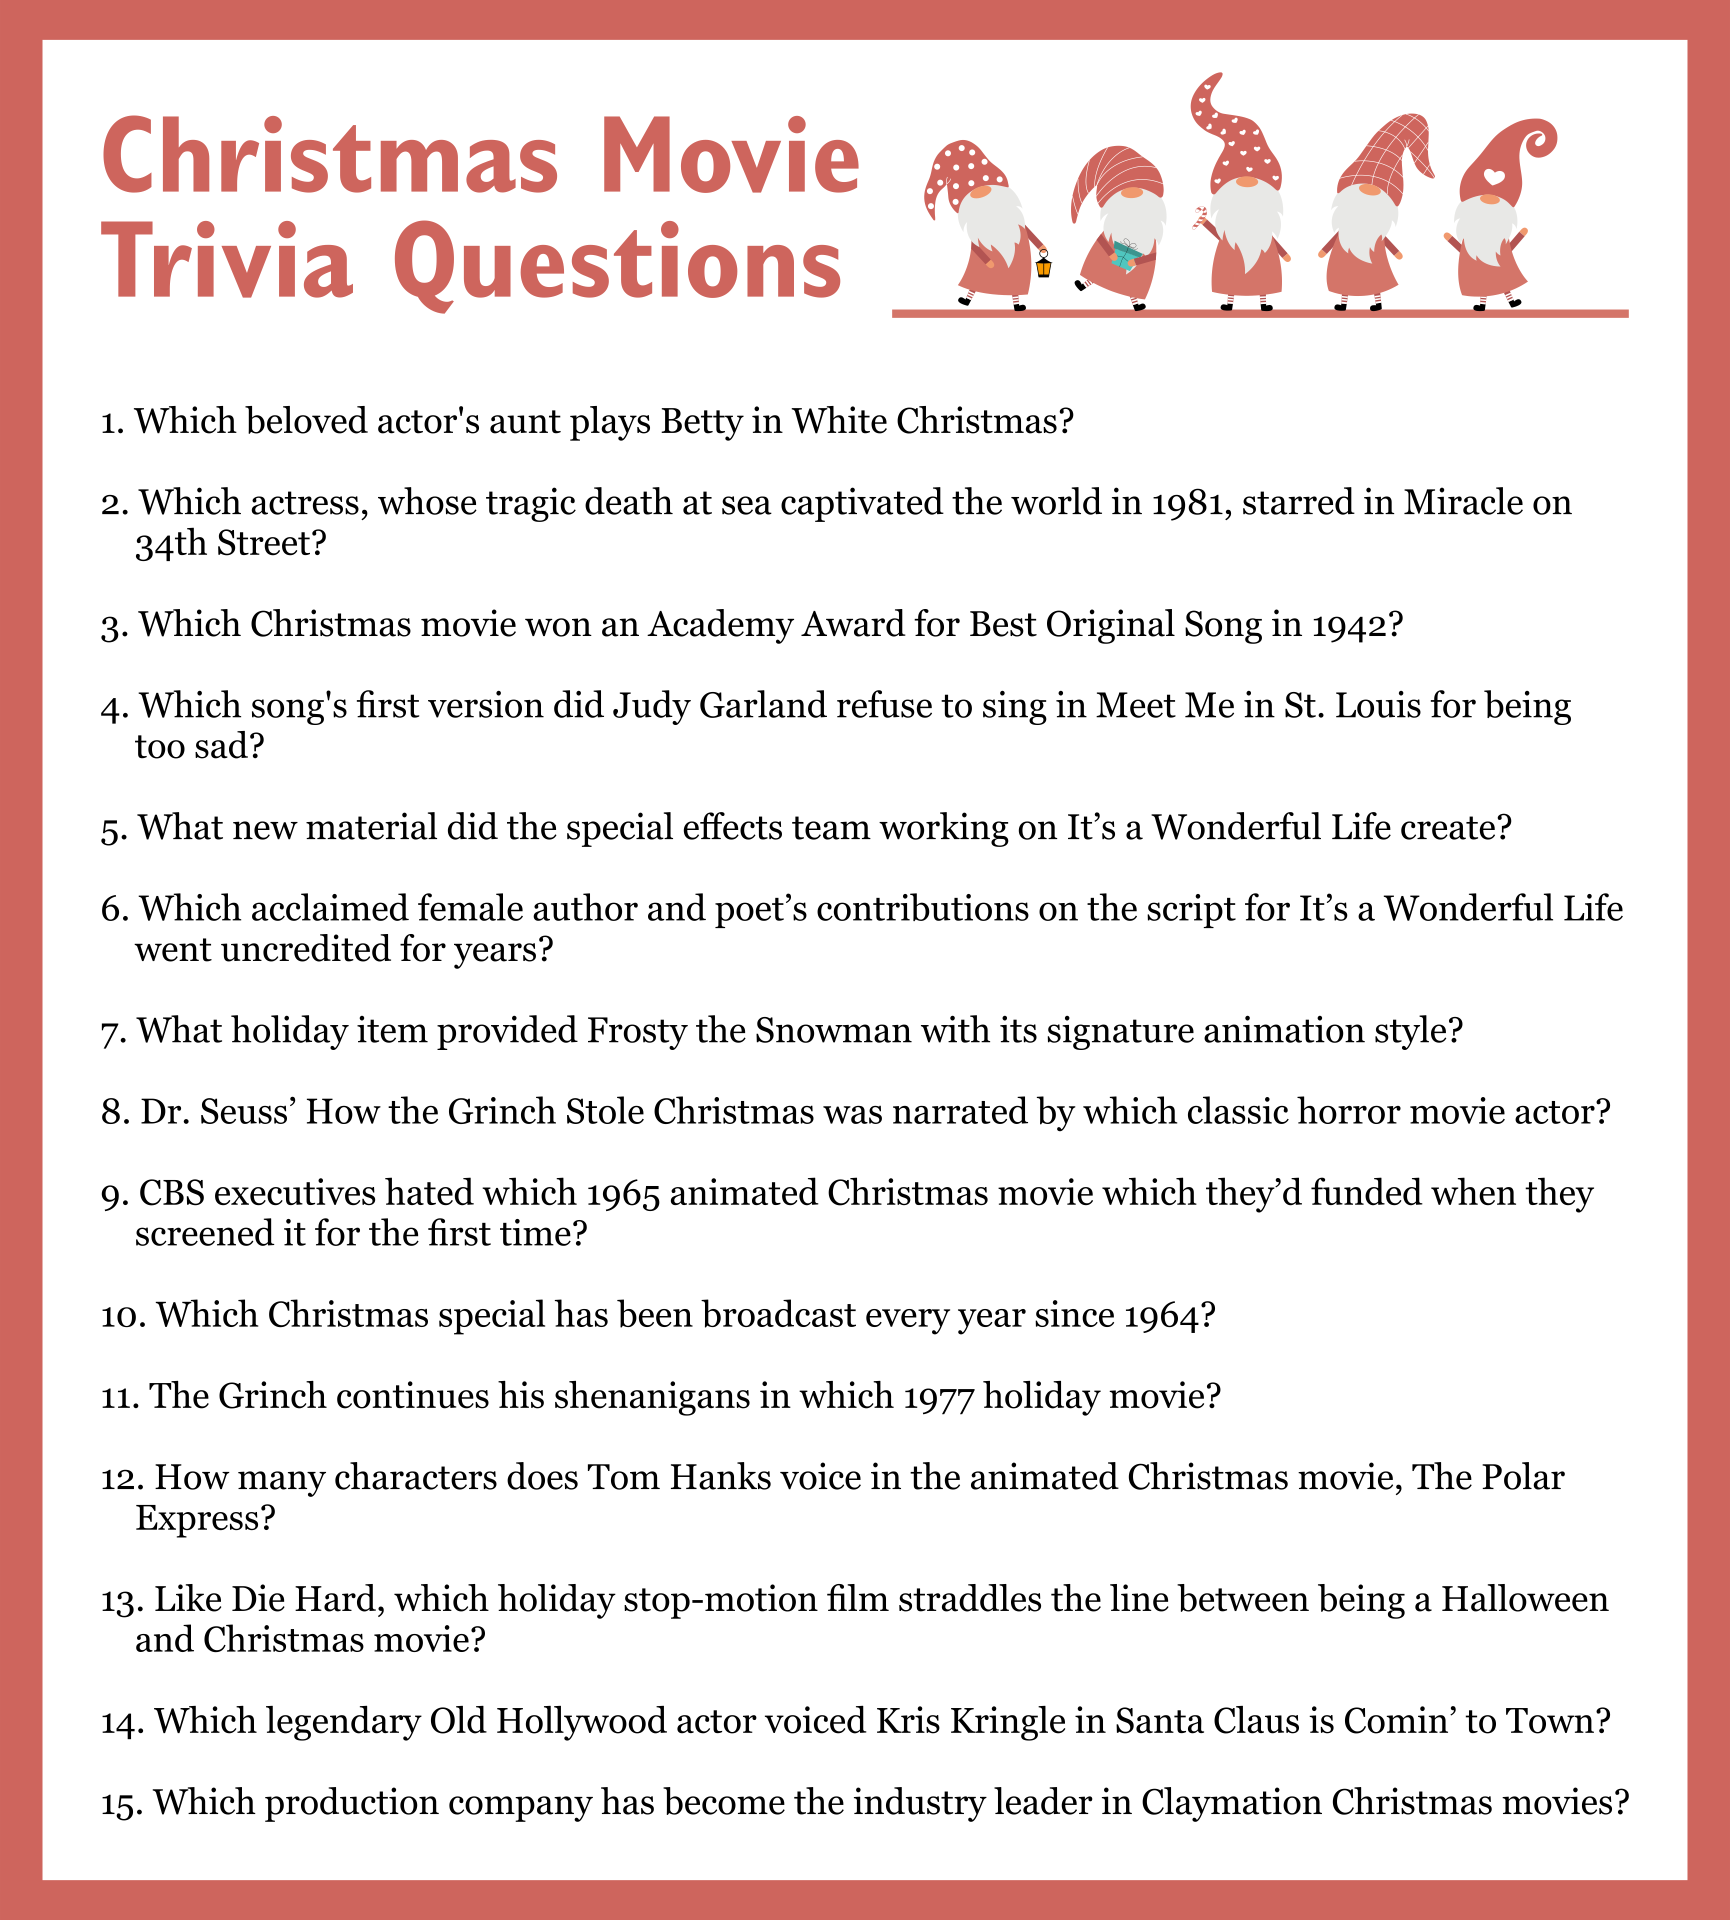 Christmas Trivia Questions - 15 Free PDF Printables | Printablee